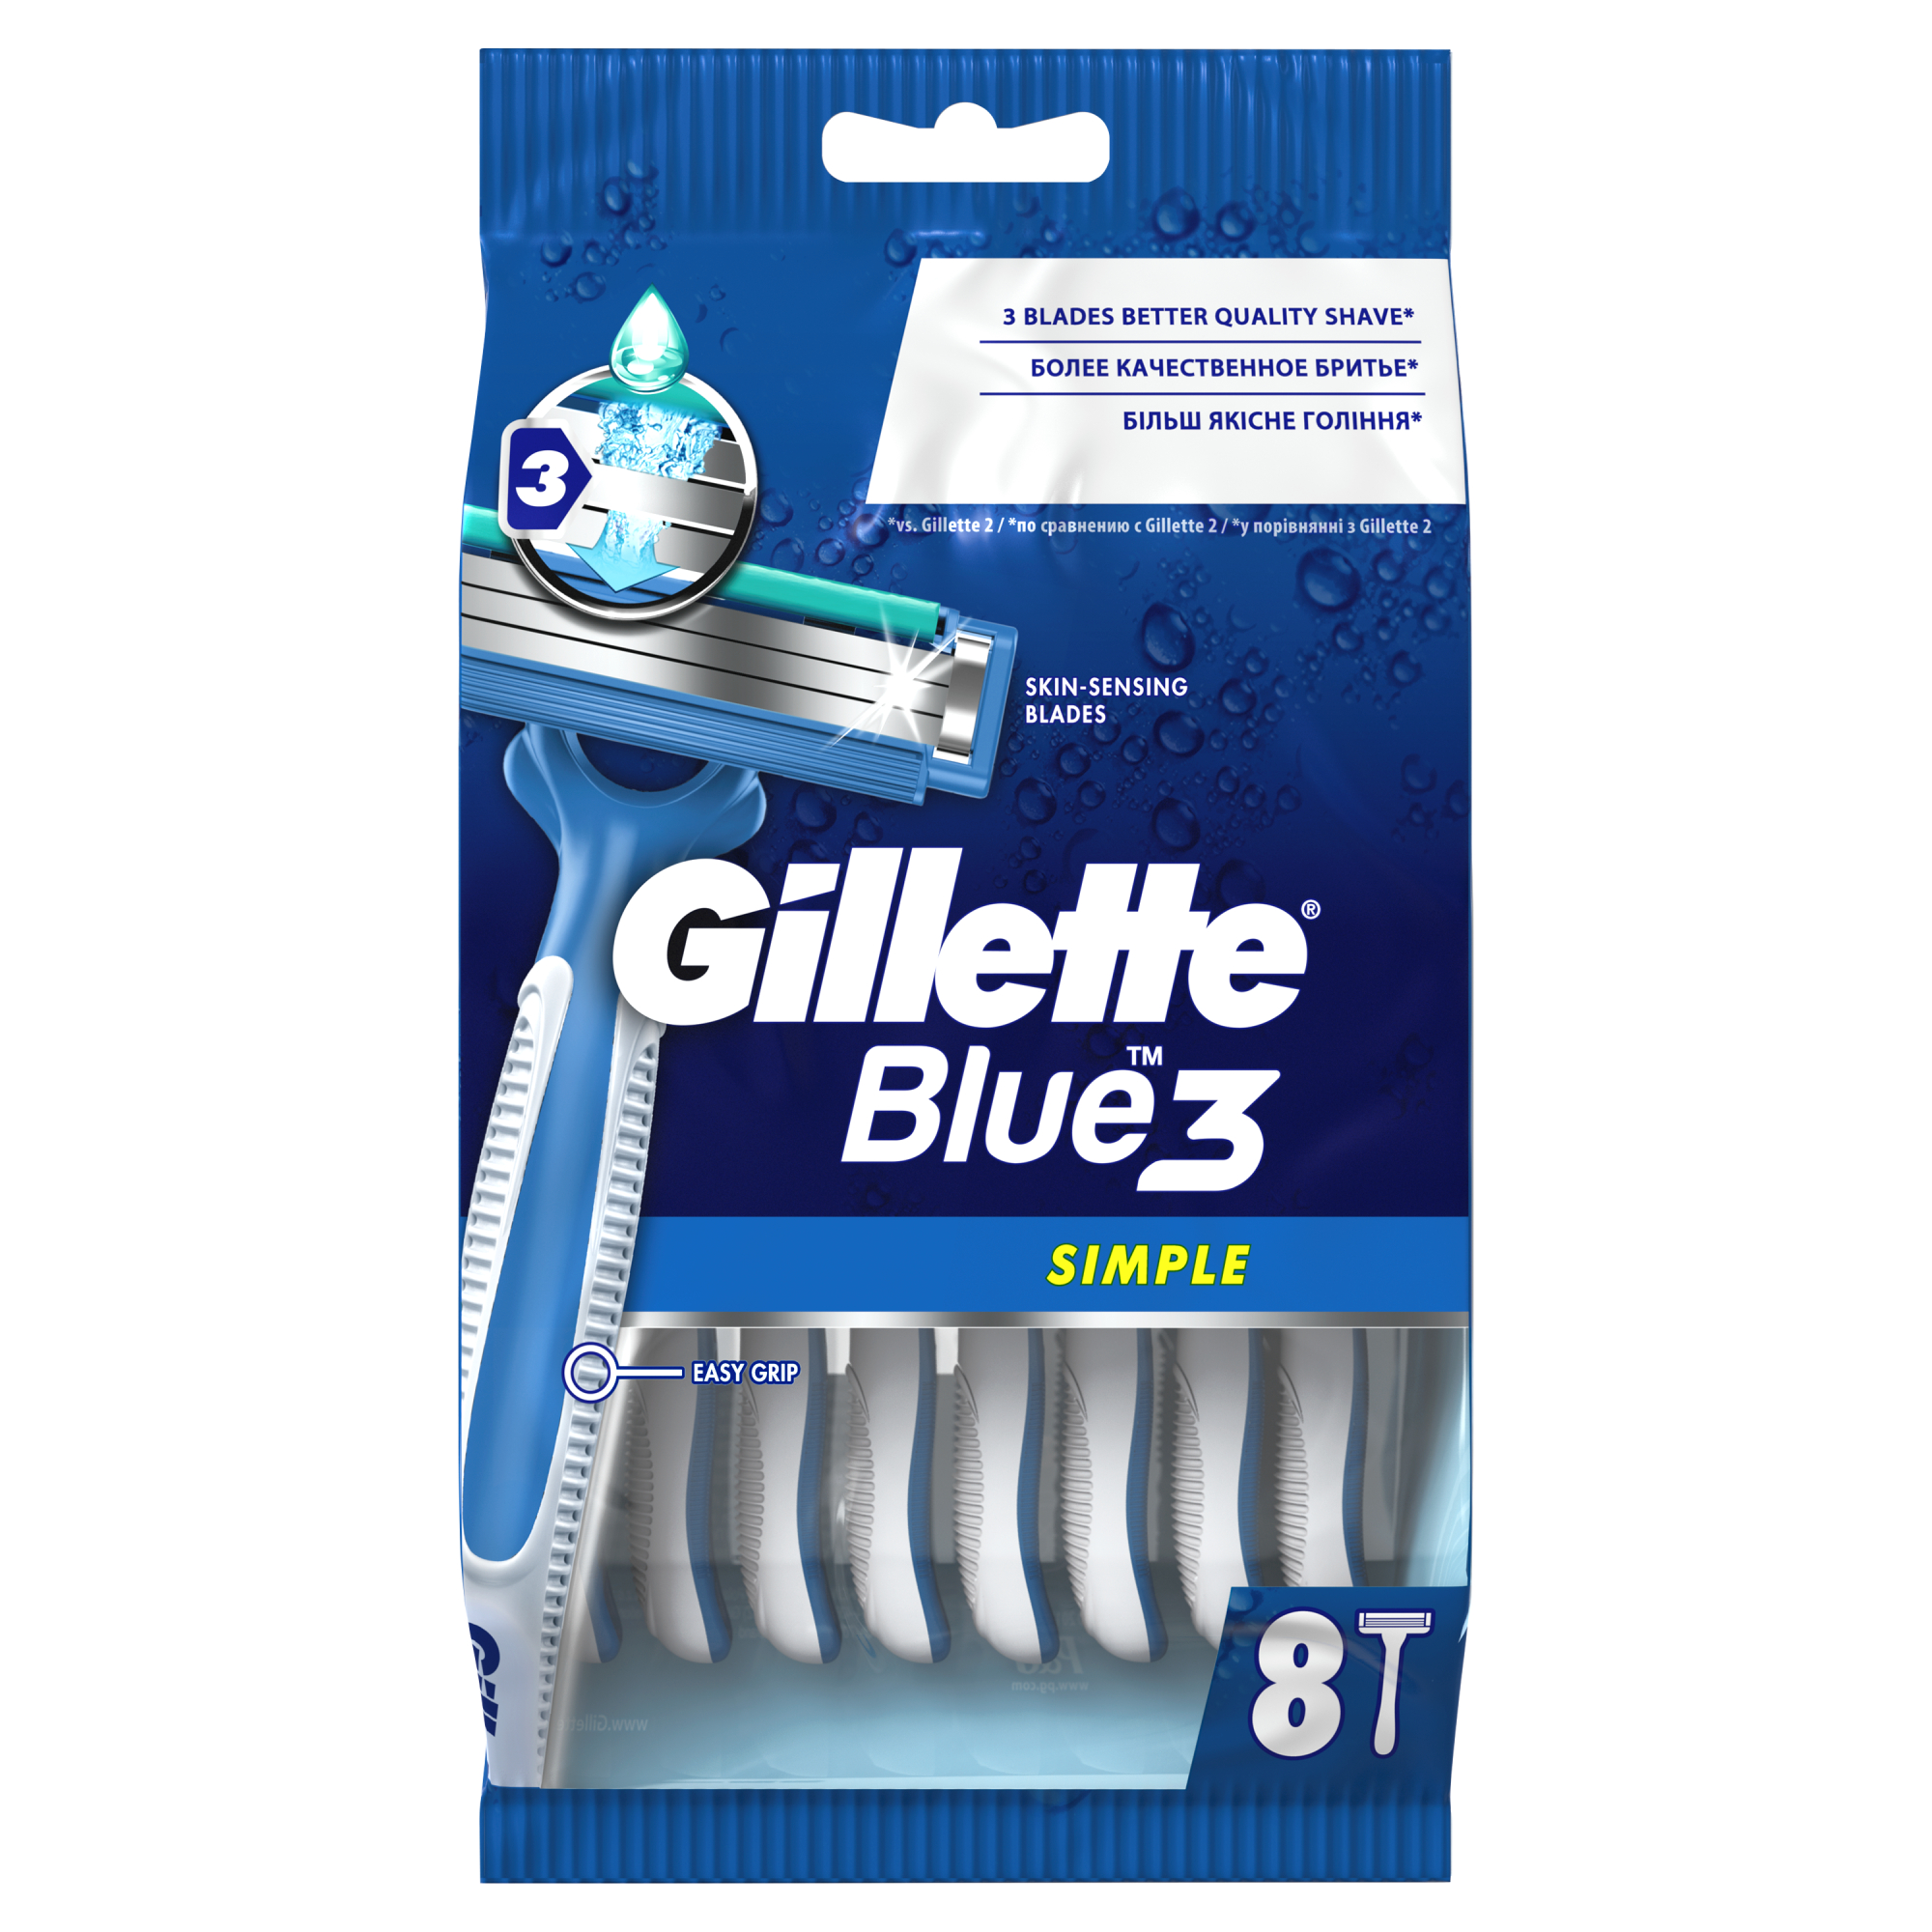 Одноразовые мужские бритвы Gillette Blue3 Simple, с 3 лезвиями, 8, фиксированная головка одноразовая женская бритва gillette venus 2 4 шт